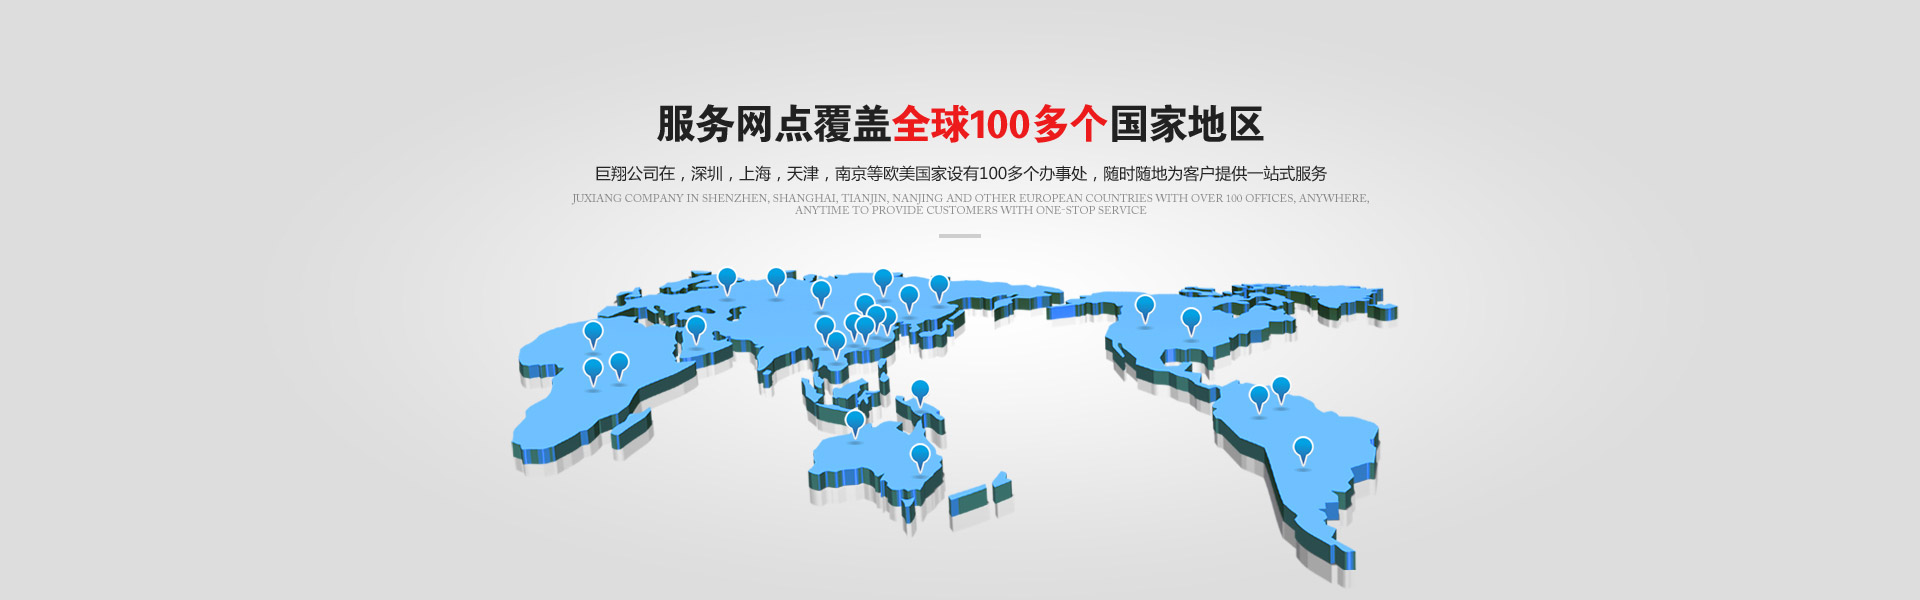 服务网点覆盖全球100多个国家地区